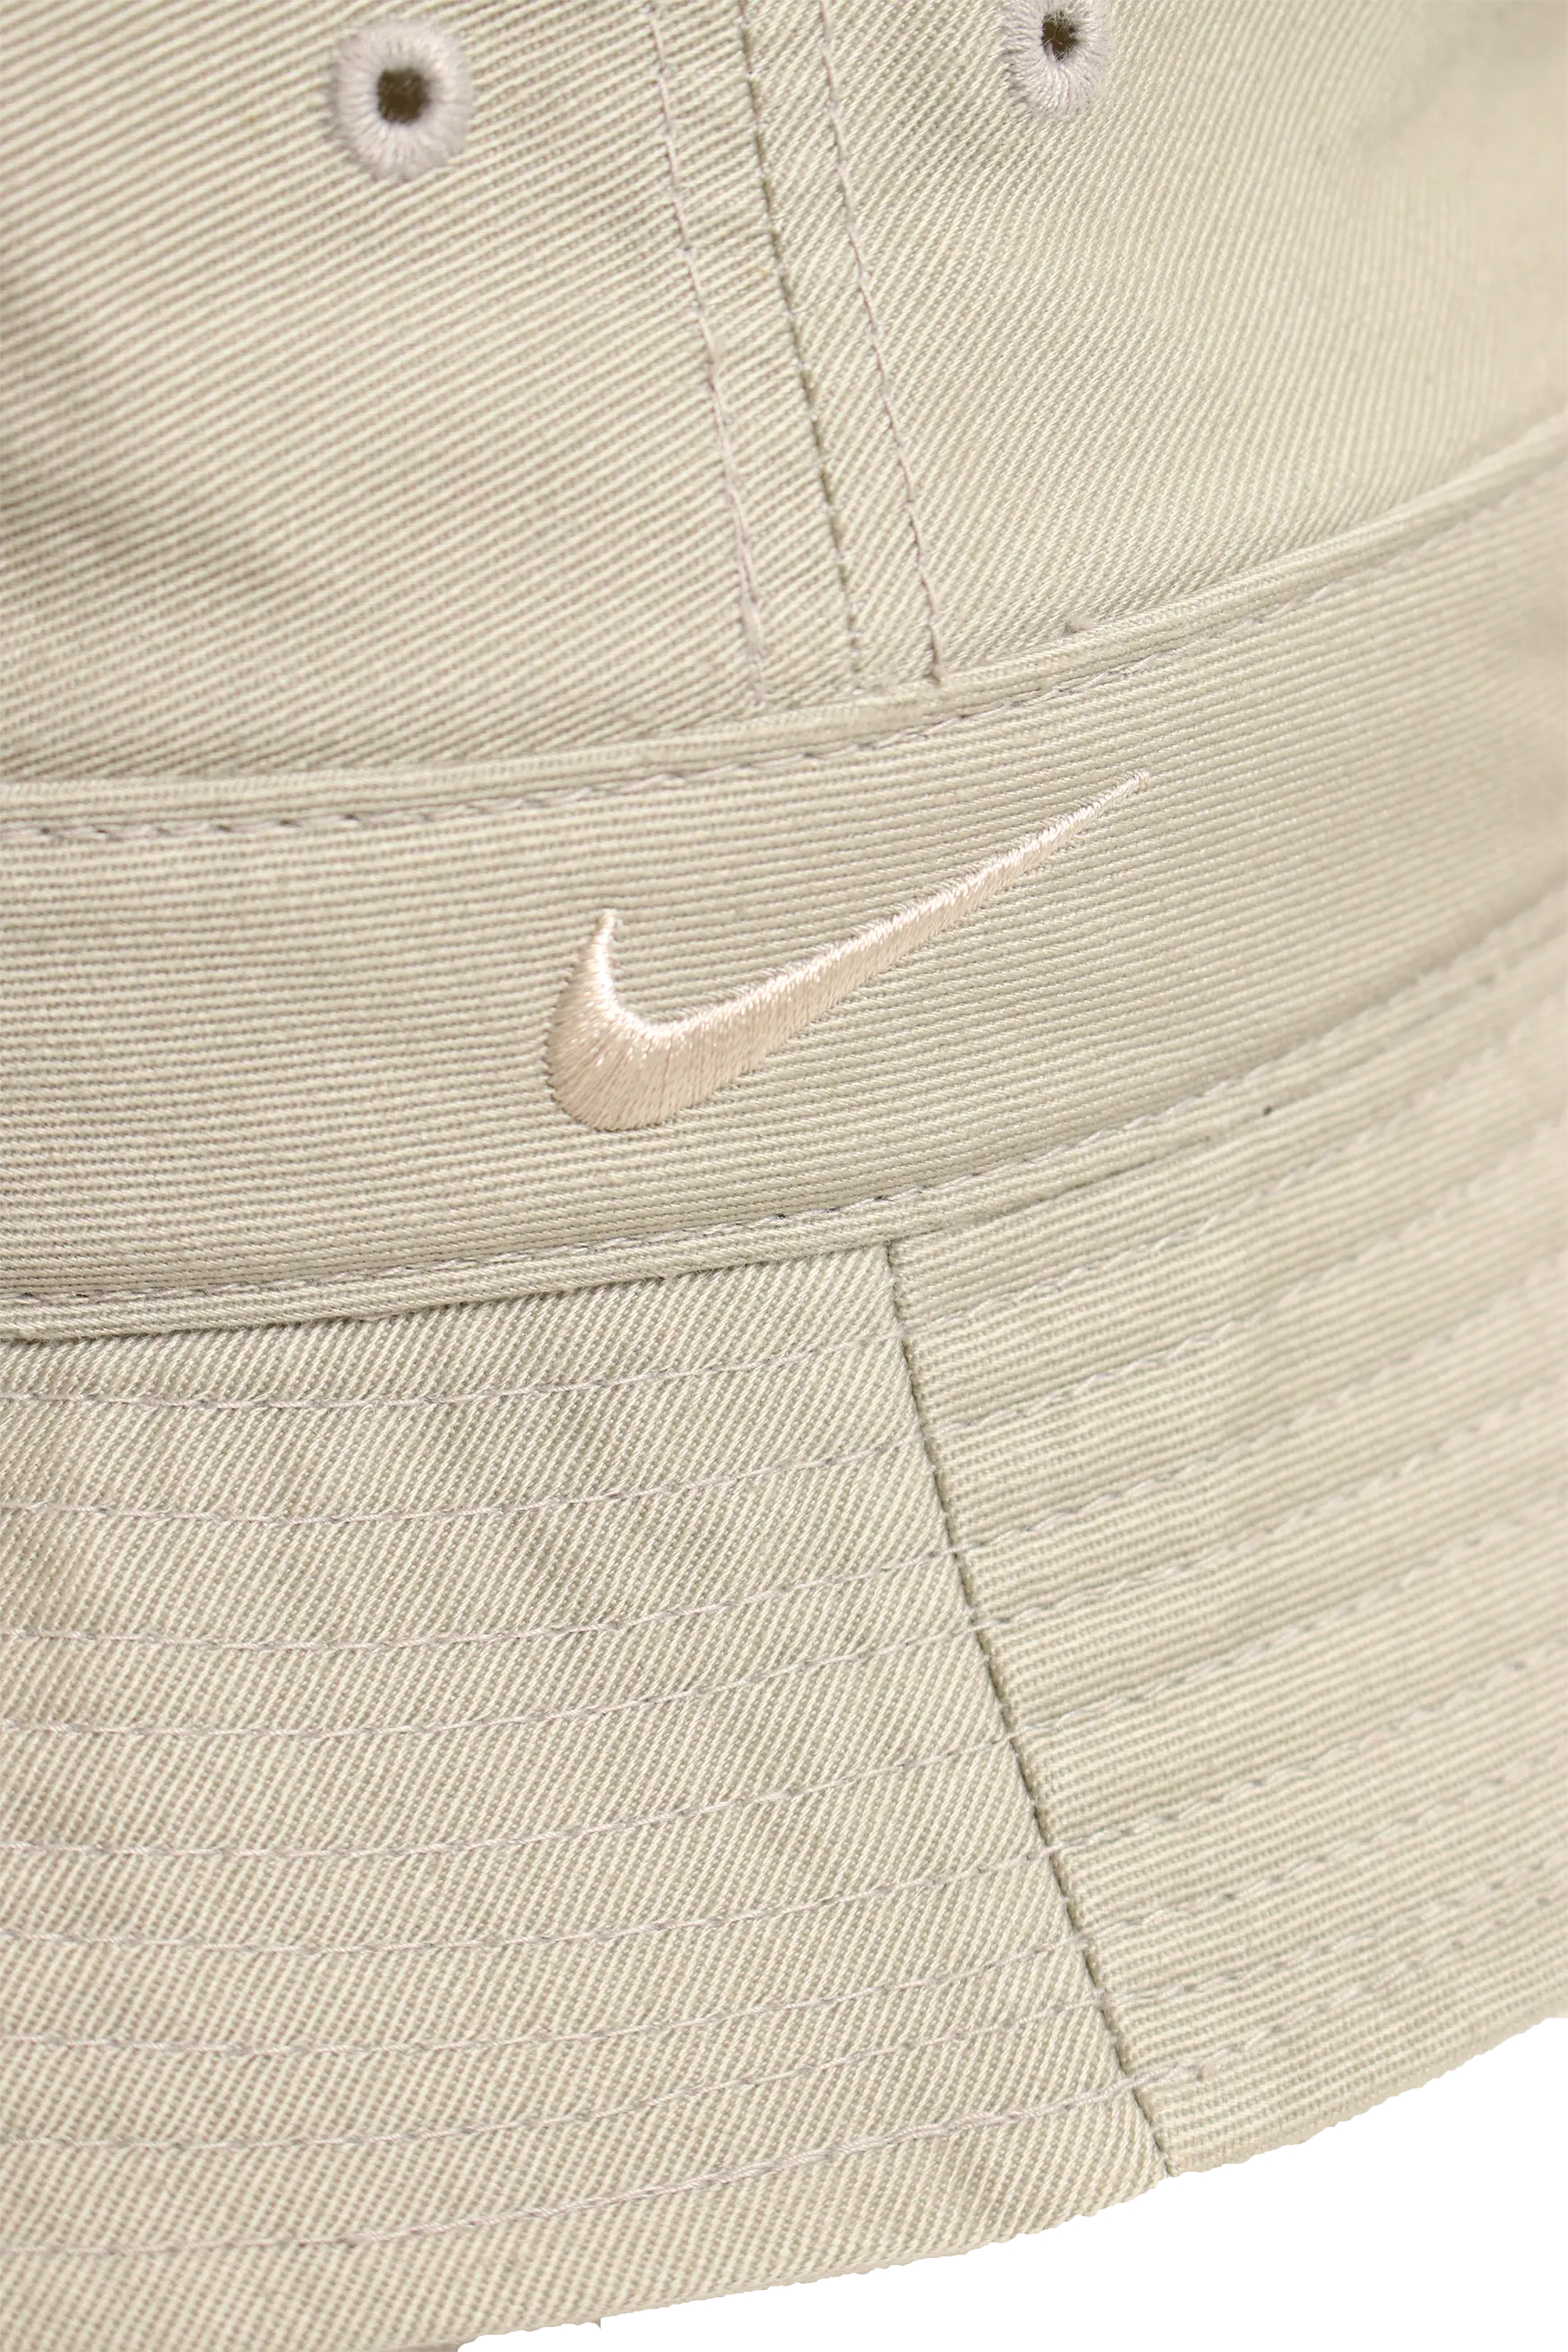 Nike 90s Bucket Hat